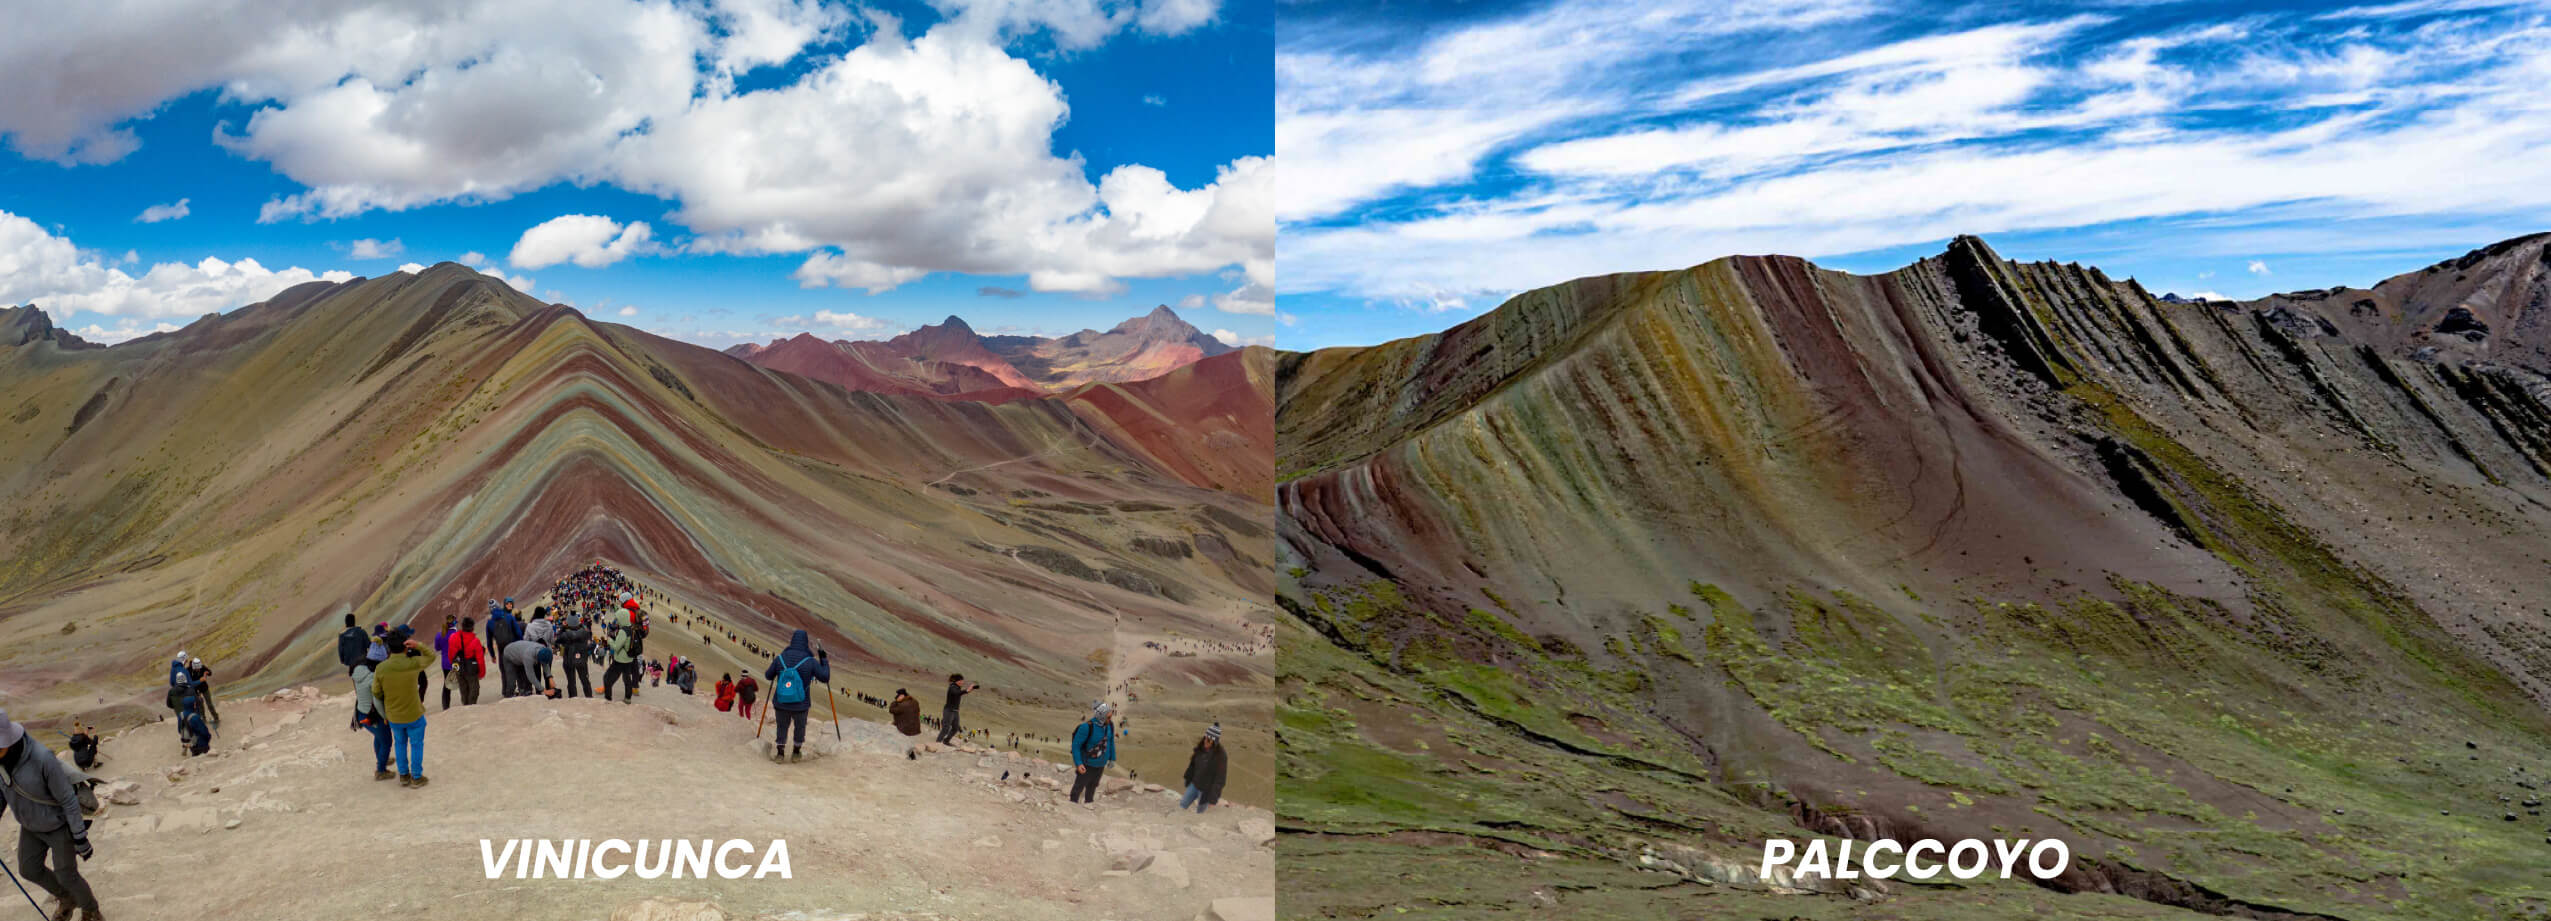 Montaña de colores Vinicunca vs Montaña de colores de Palcoyo